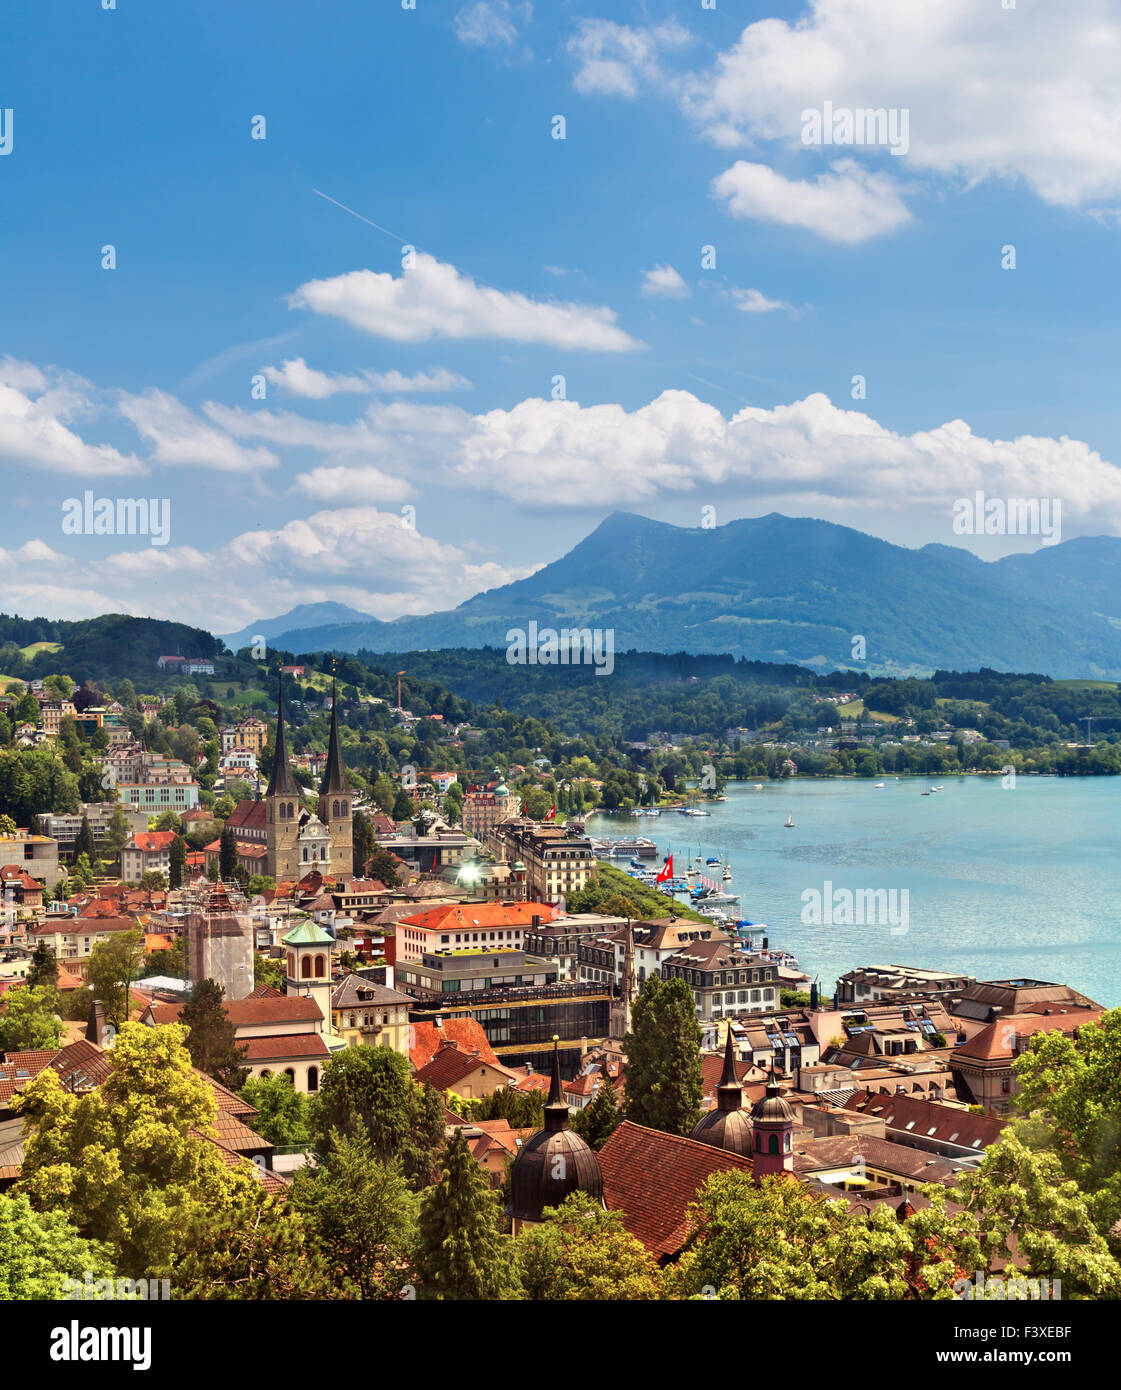 Cityscape of Lucerne, Switzerland Stock Photo